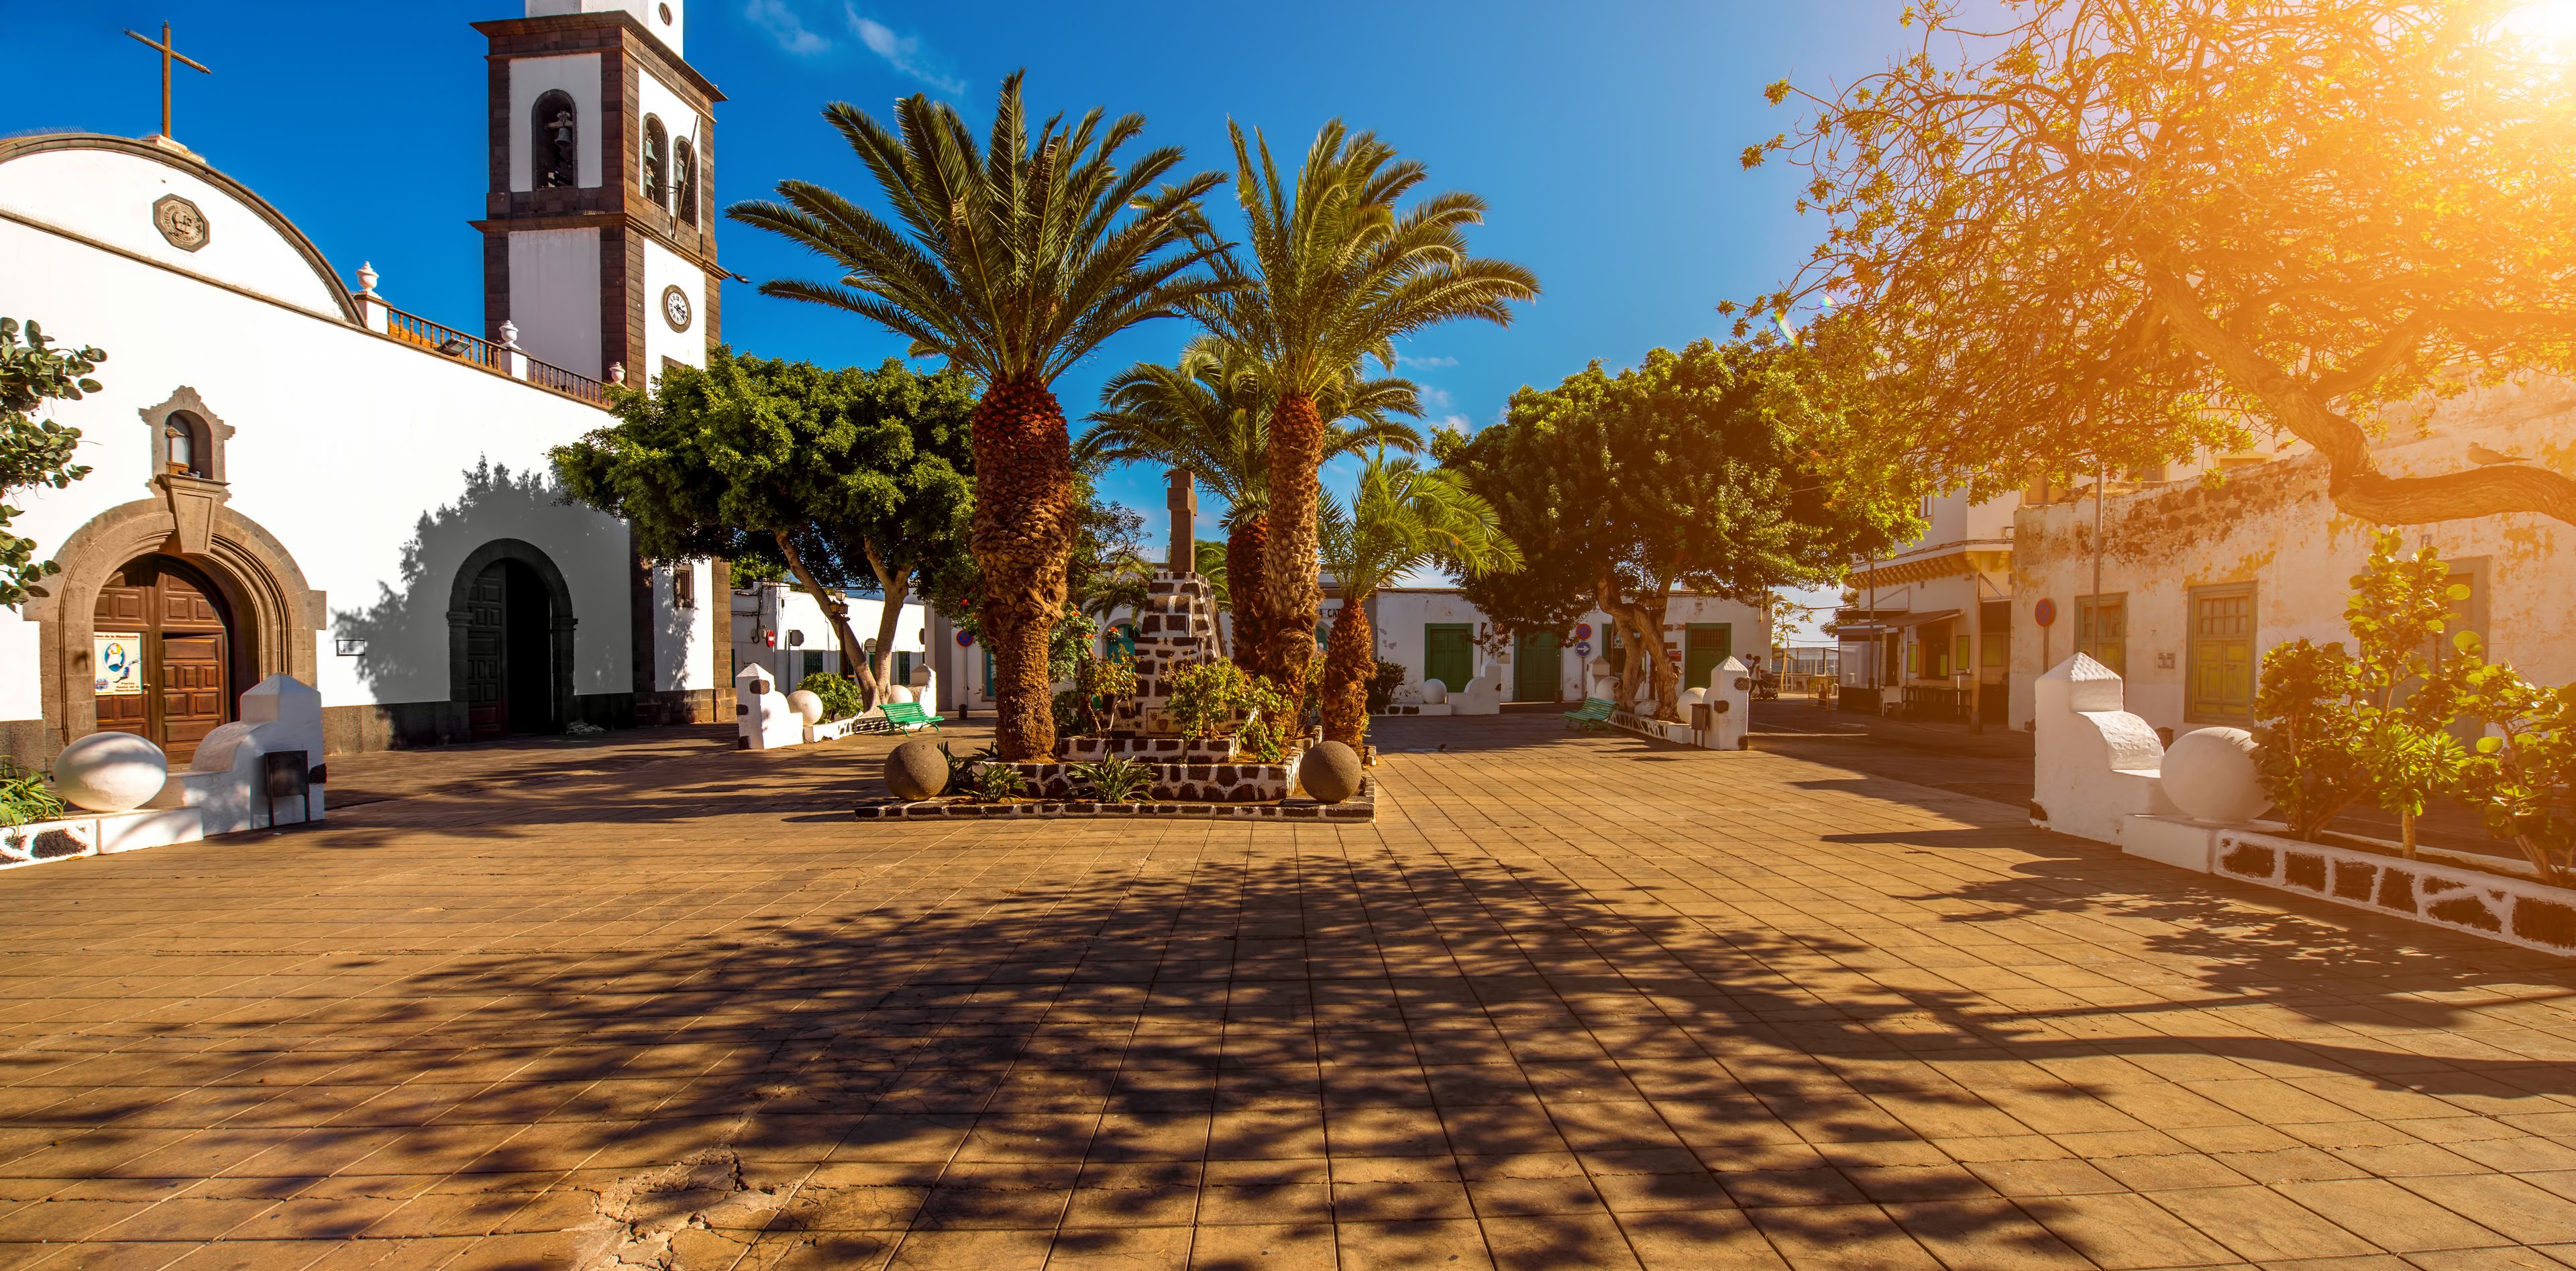 Plaza de Arrecife